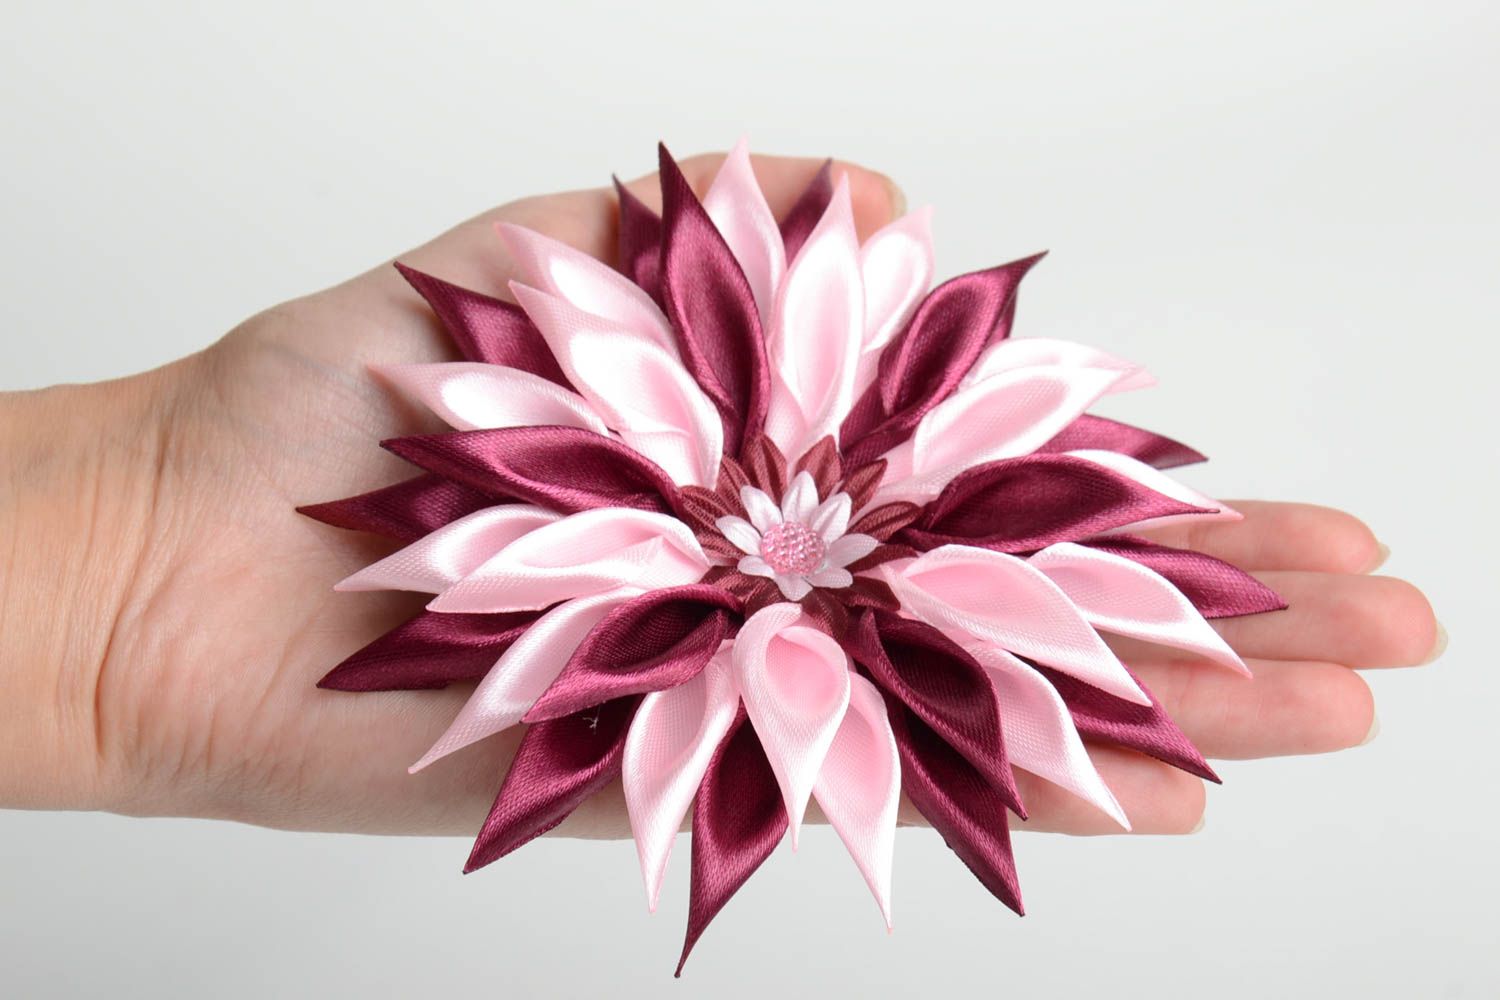 Rosa schöne künstlerische handgemachte Damen Kanzashi Deko Blume für Haarspange  foto 5